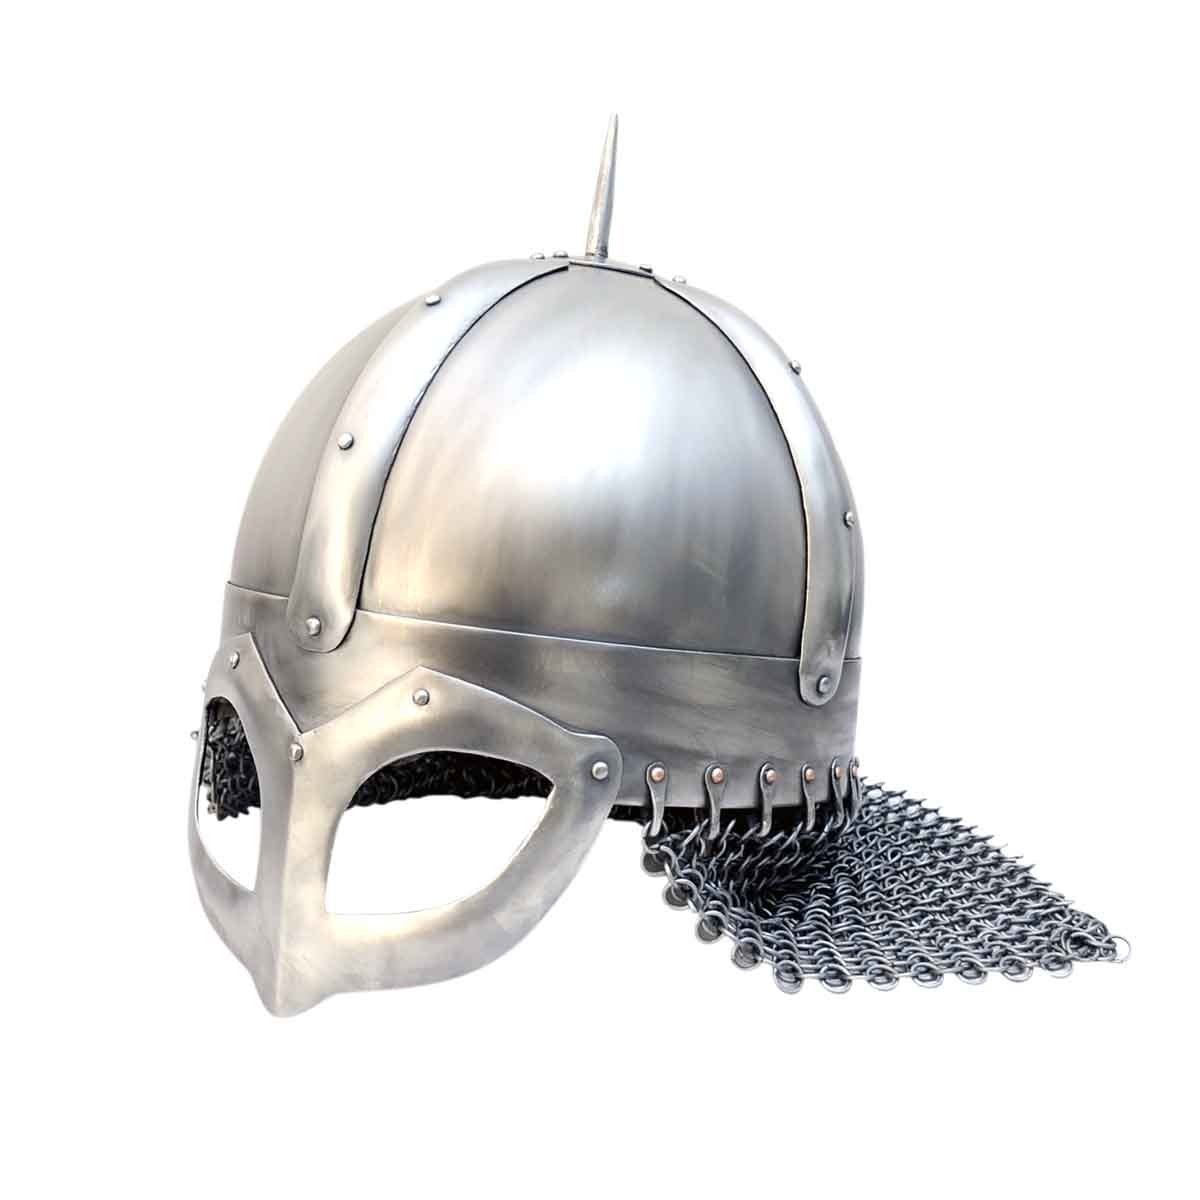 The Gjermundbu helmet-970 AD, Size XL